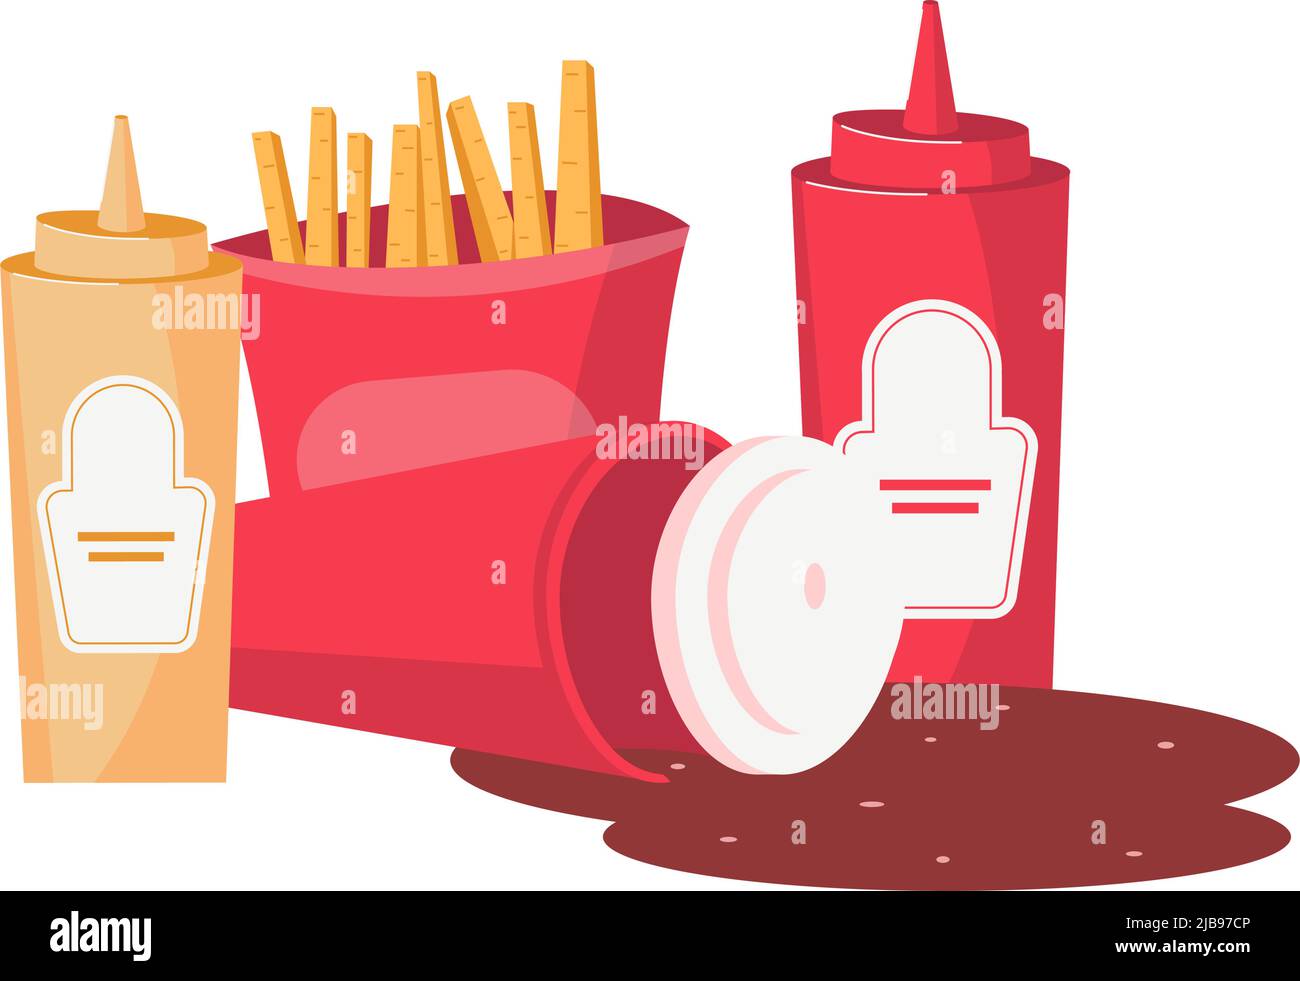 Flache Zusammensetzung von Junk-Food mit pommes frites, einer Flasche Ketchup-Senf und verschütteter Koks Stock Vektor